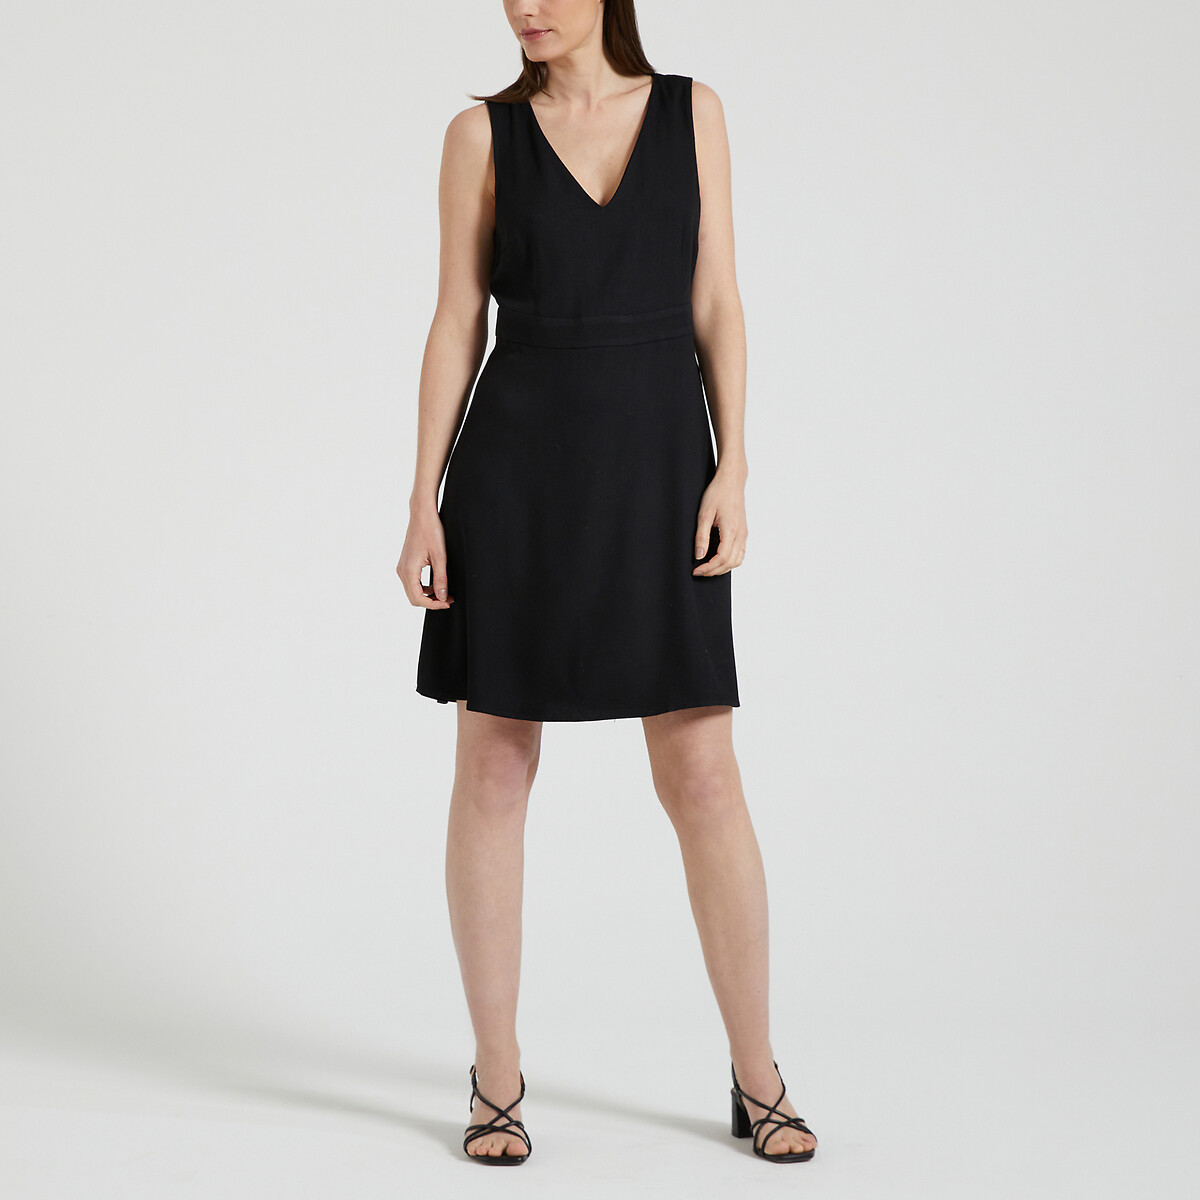 Платье короткое со спинкой из кружева  46 черный LaRedoute, размер 46 - фото 2